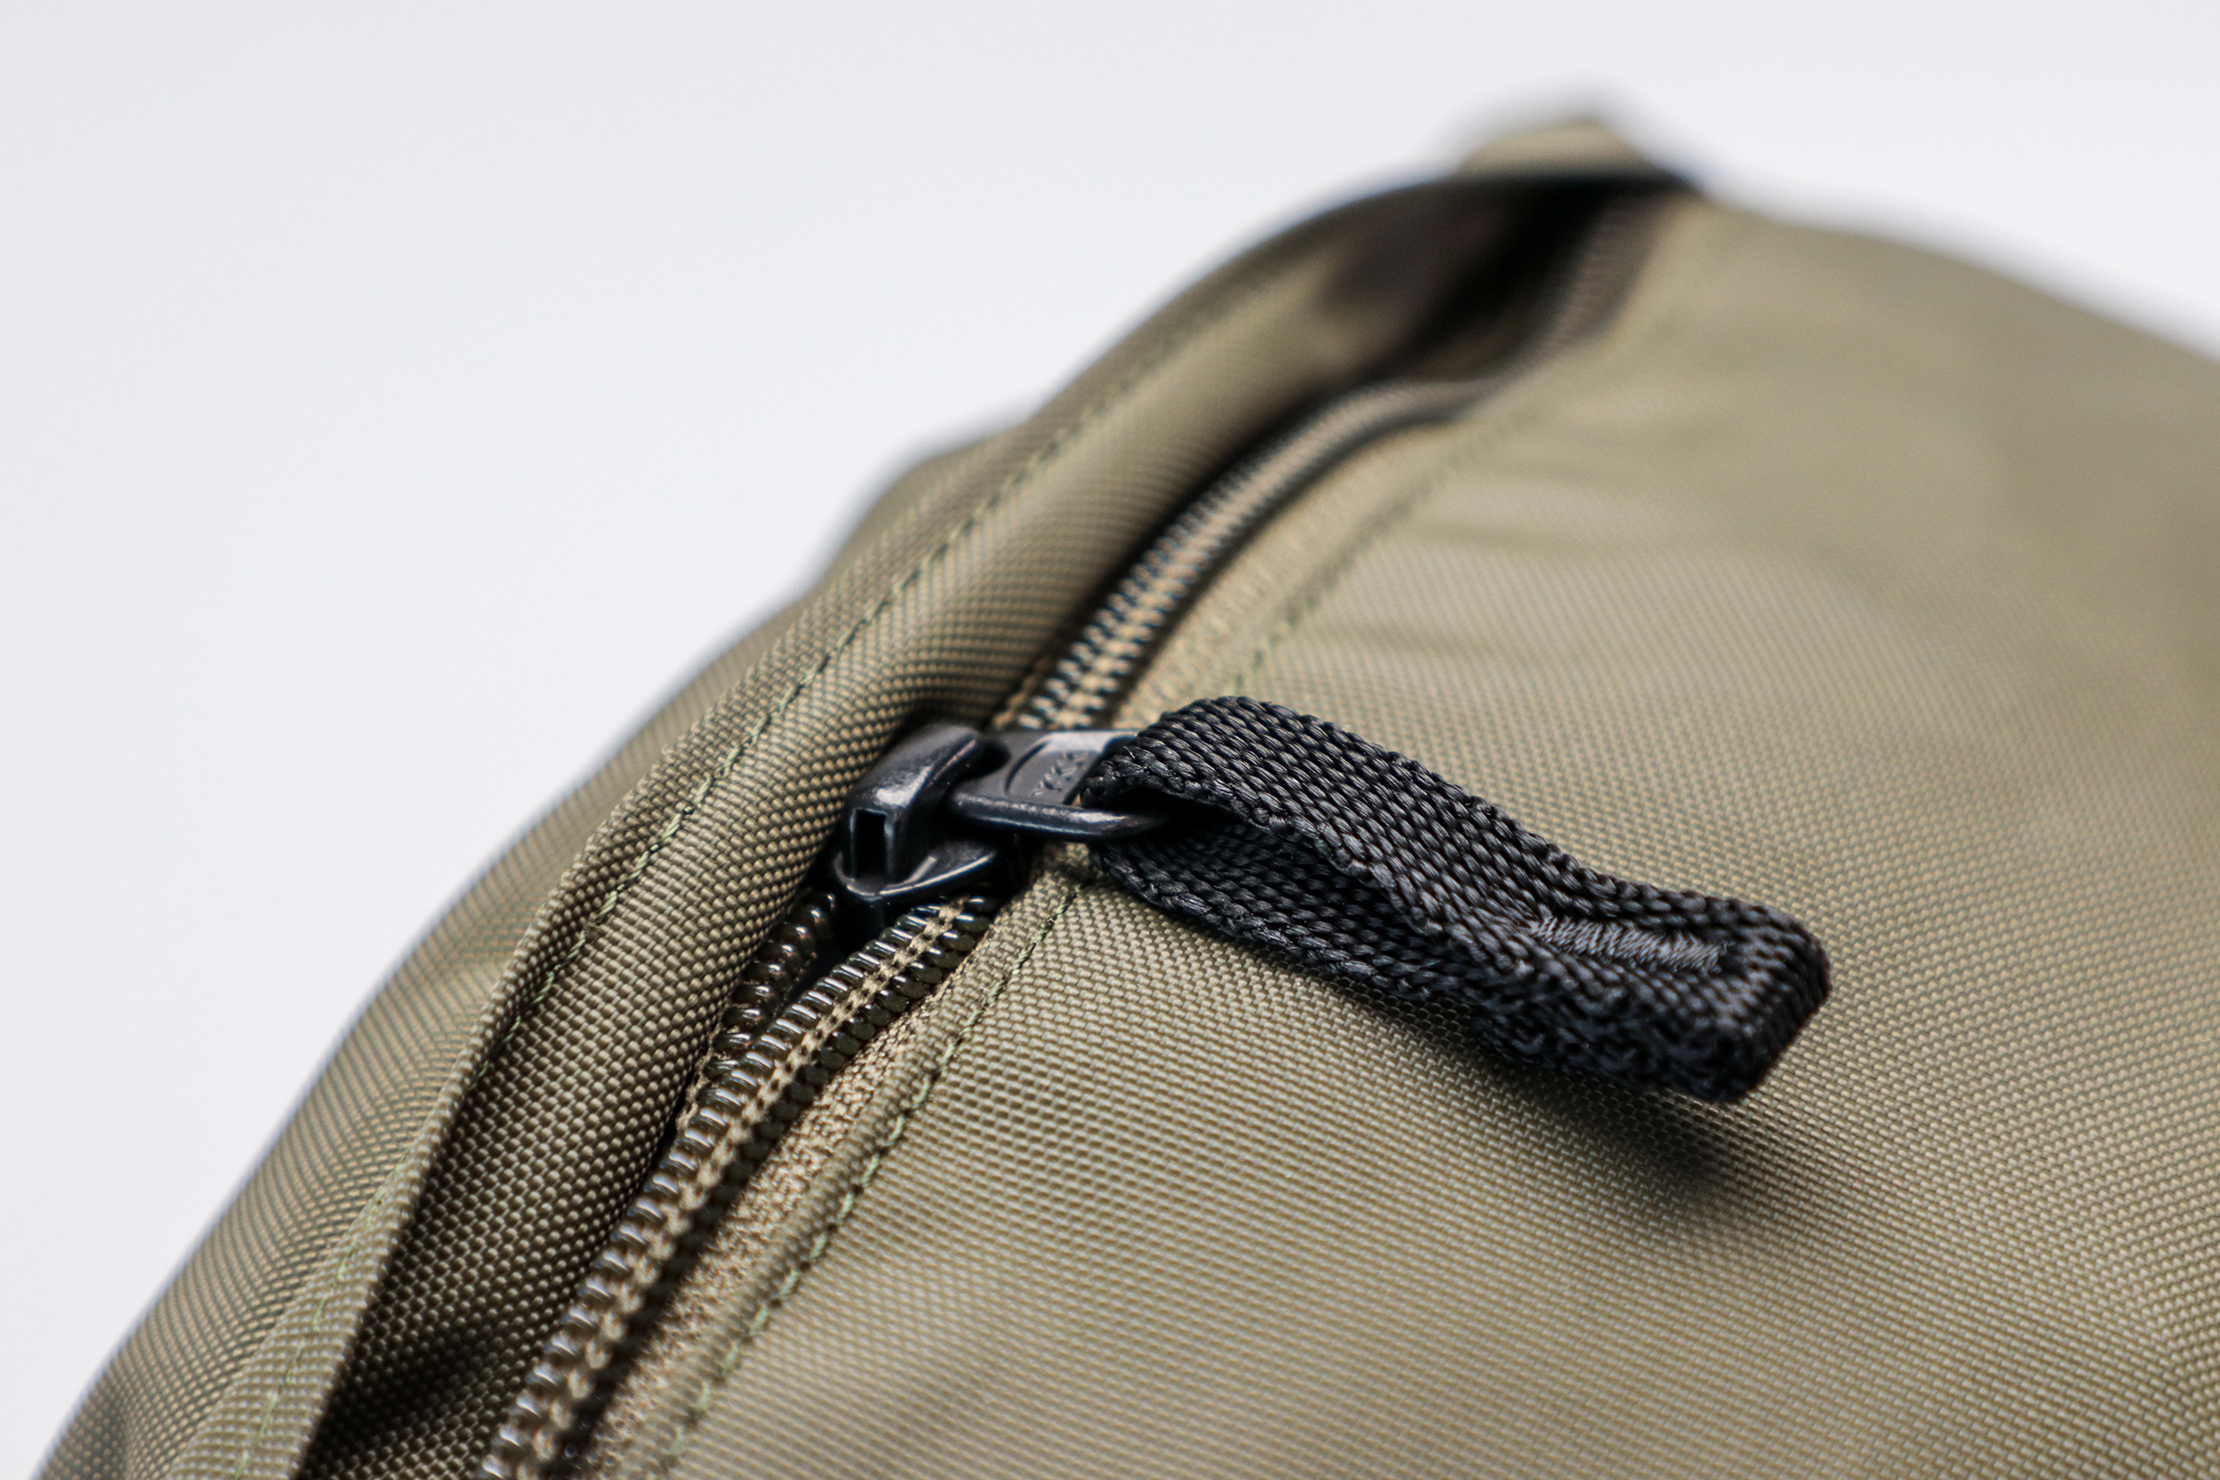 Uniqlo Single Strap Backpack Zipper